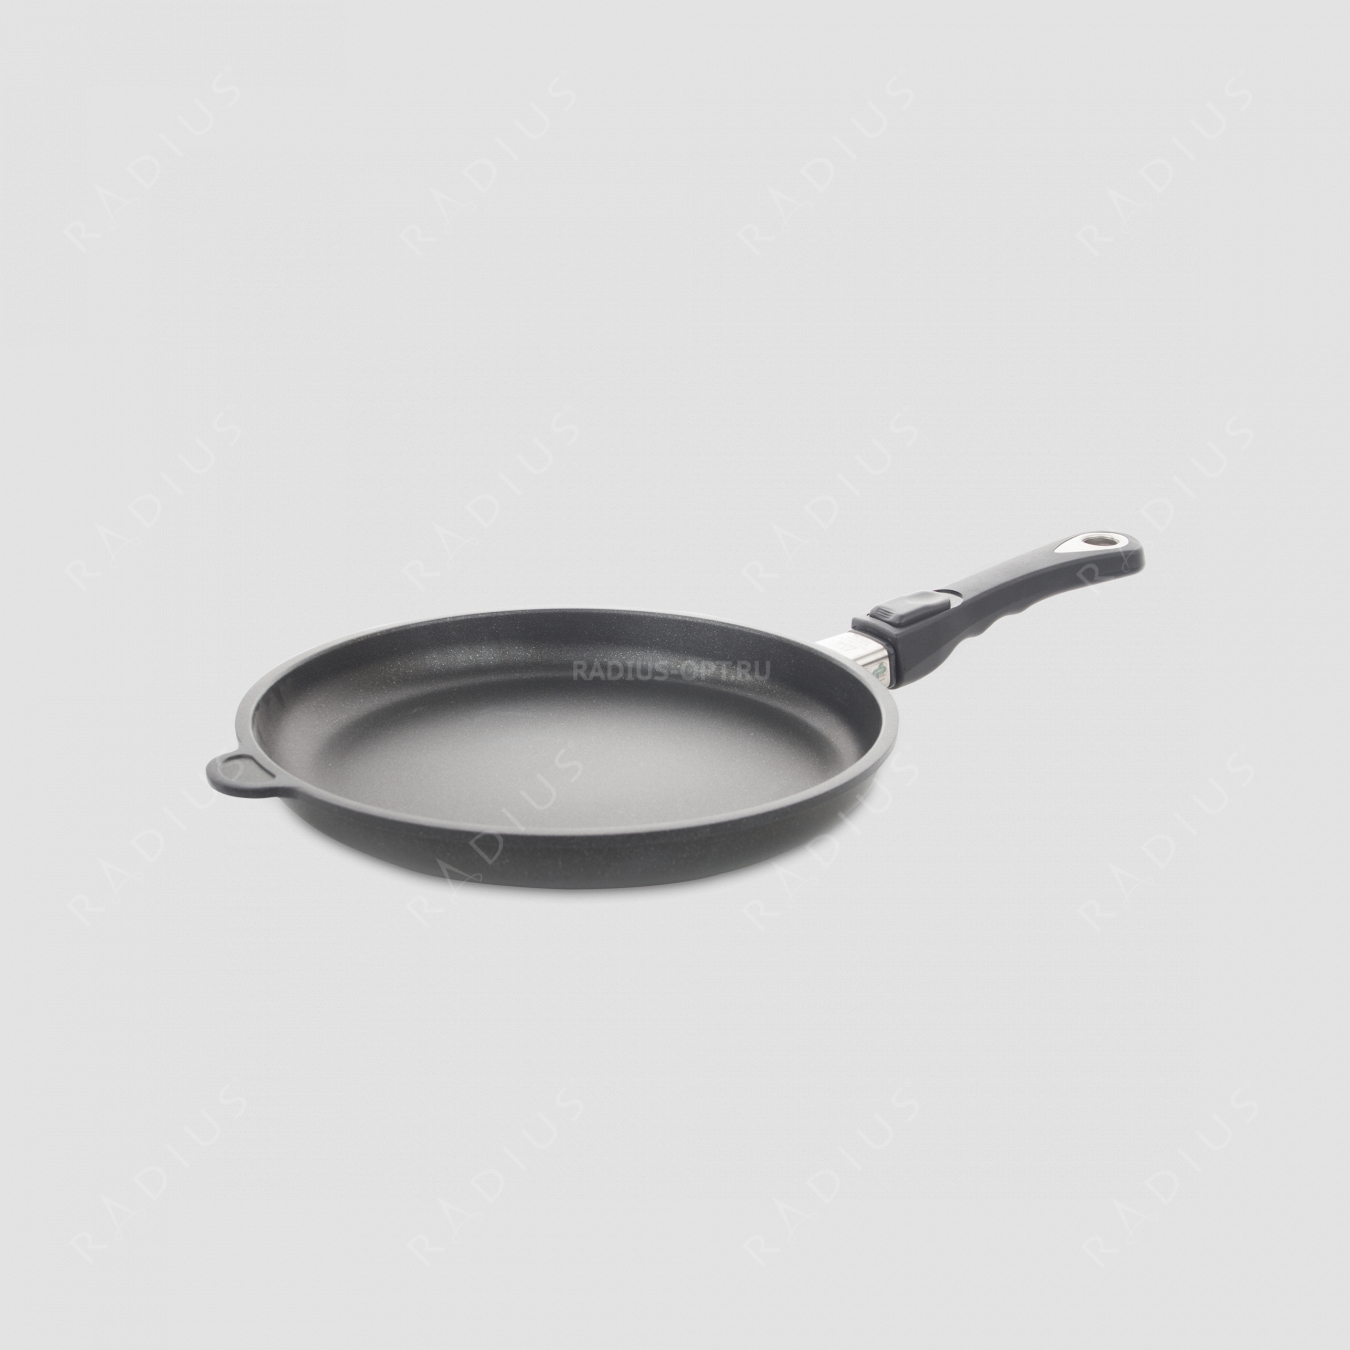 Алюминиевая сковорода с антипригарным покрытием, 28 см, съемная ручка, литой алюминий, серия Frying Pans, AMT, Германия